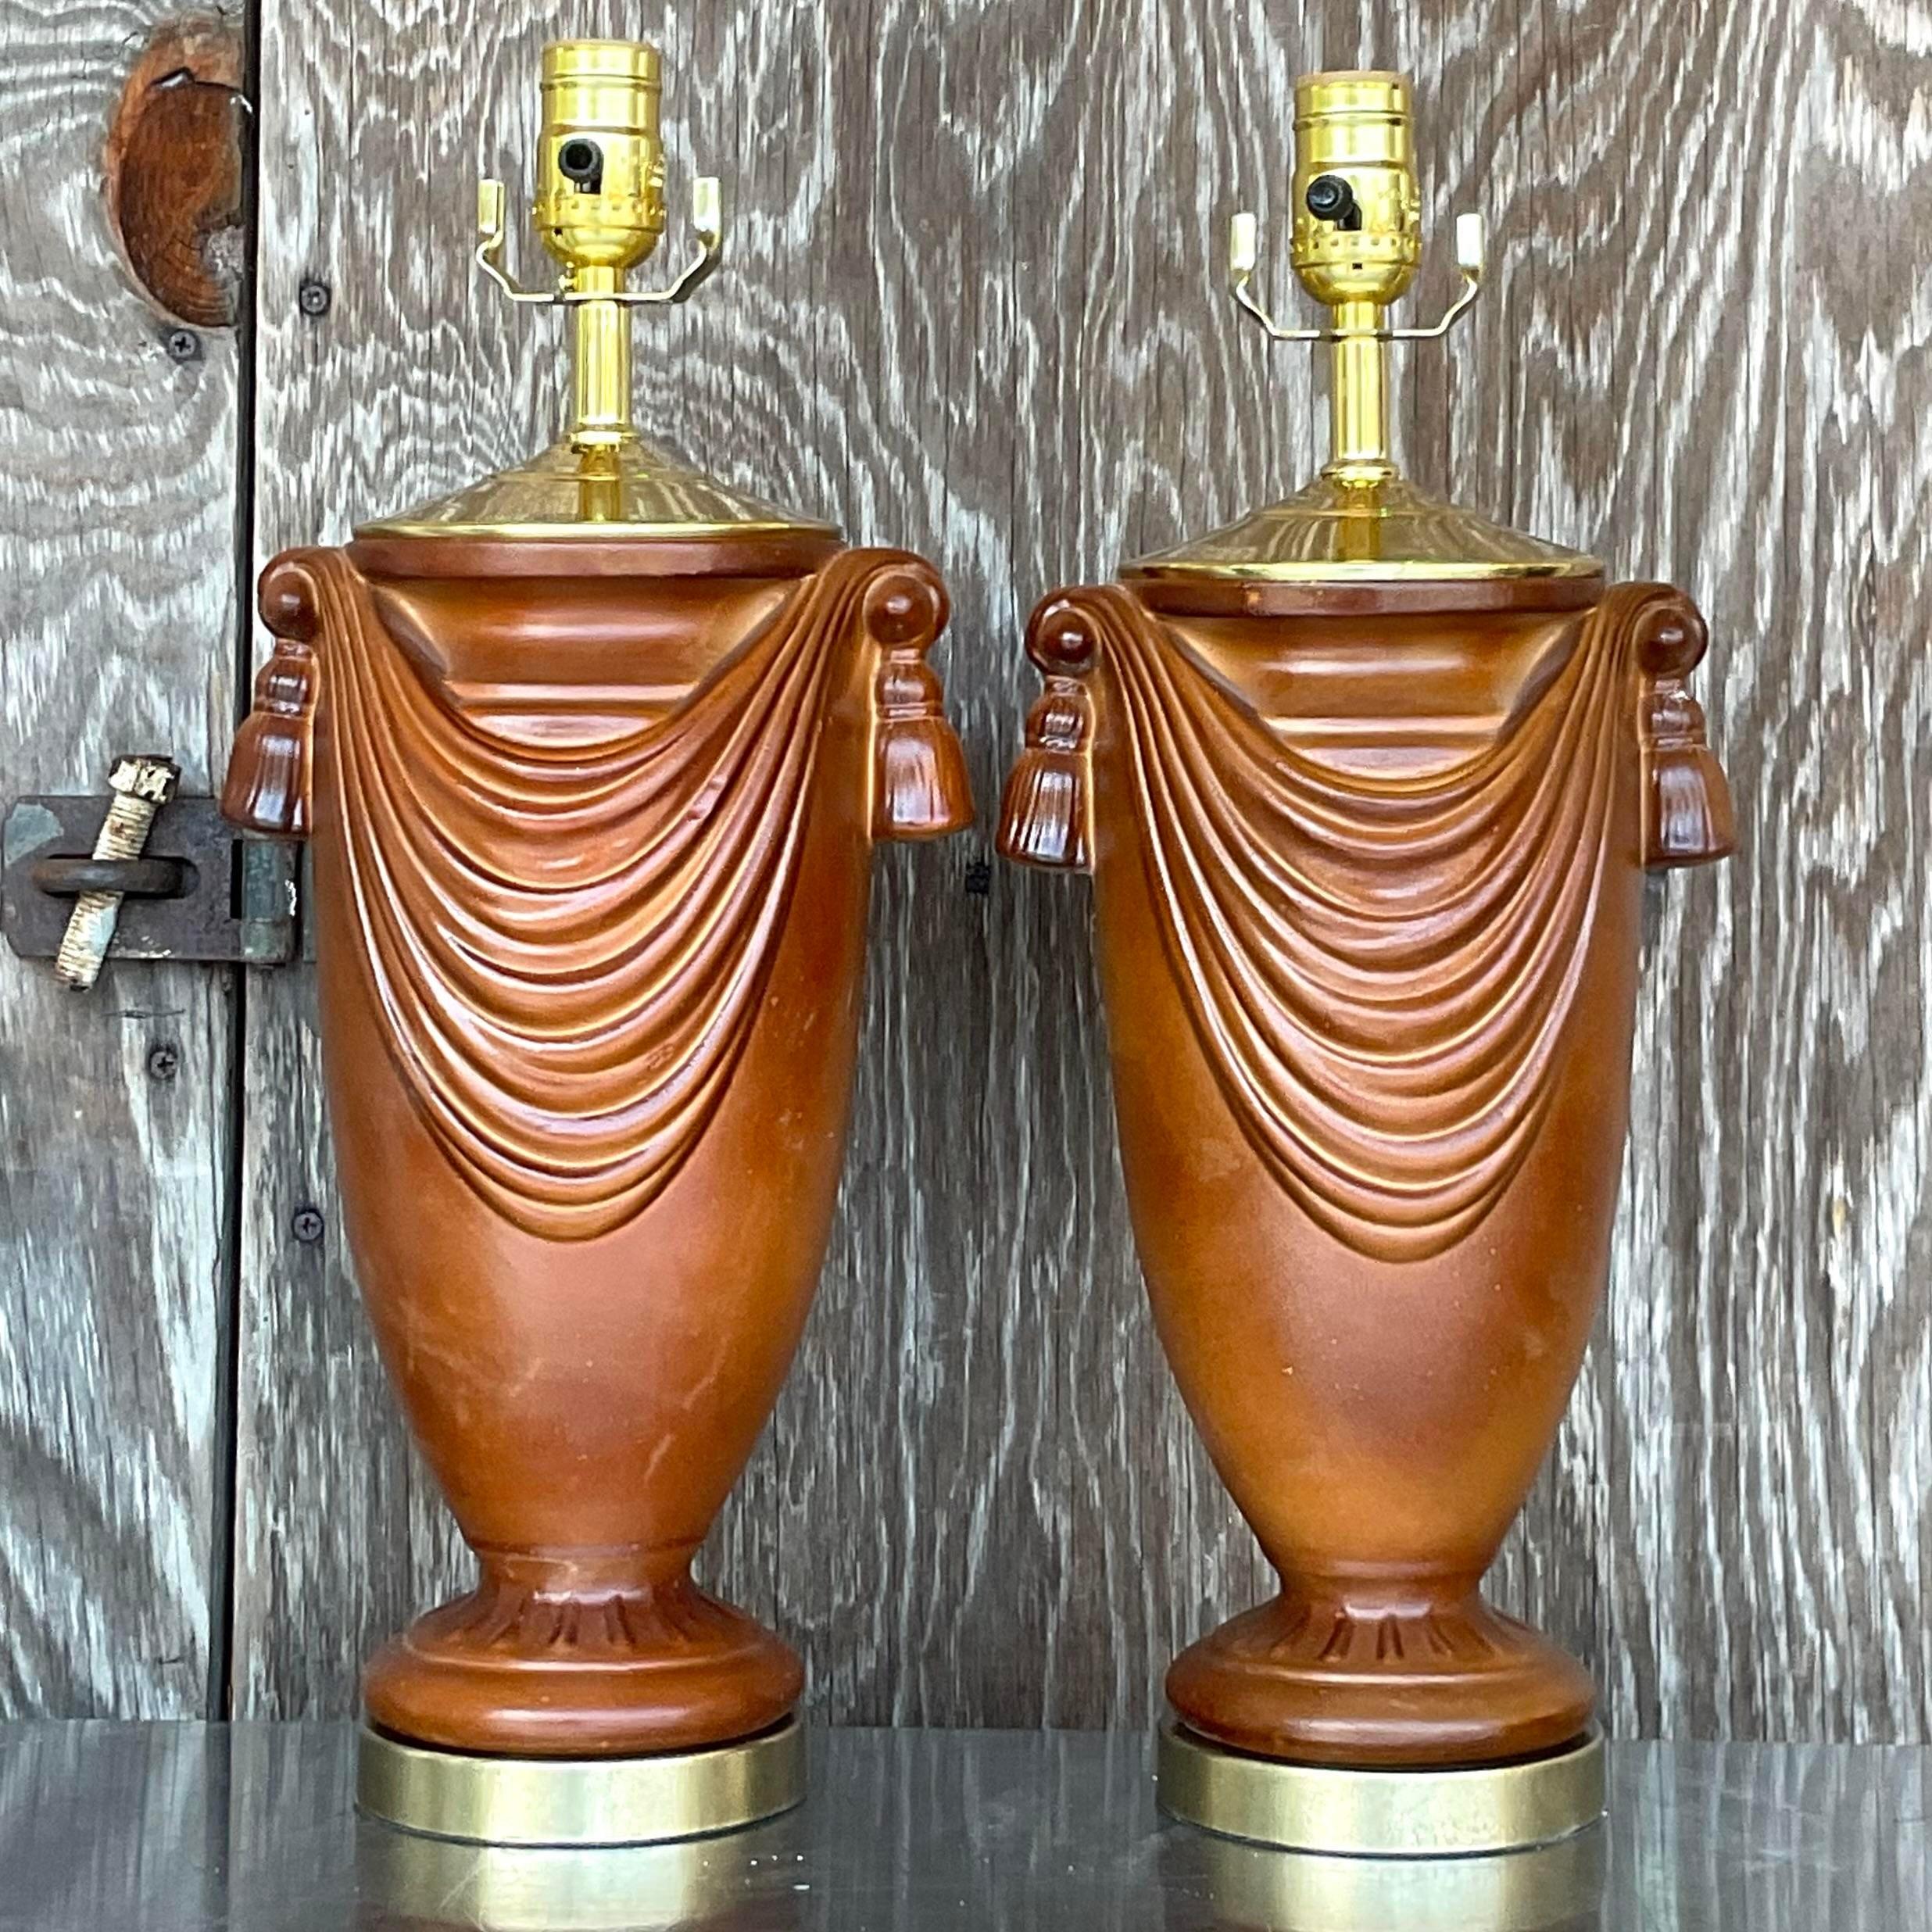 Une fabuleuse paire de lampes de table Boho vintage. Un design chic en forme de guirlande dans une magnifique finition chocolat mat. Entièrement restauré avec tous les nouveaux câblages, la quincaillerie et les plinthes en laiton. Acquis d'une